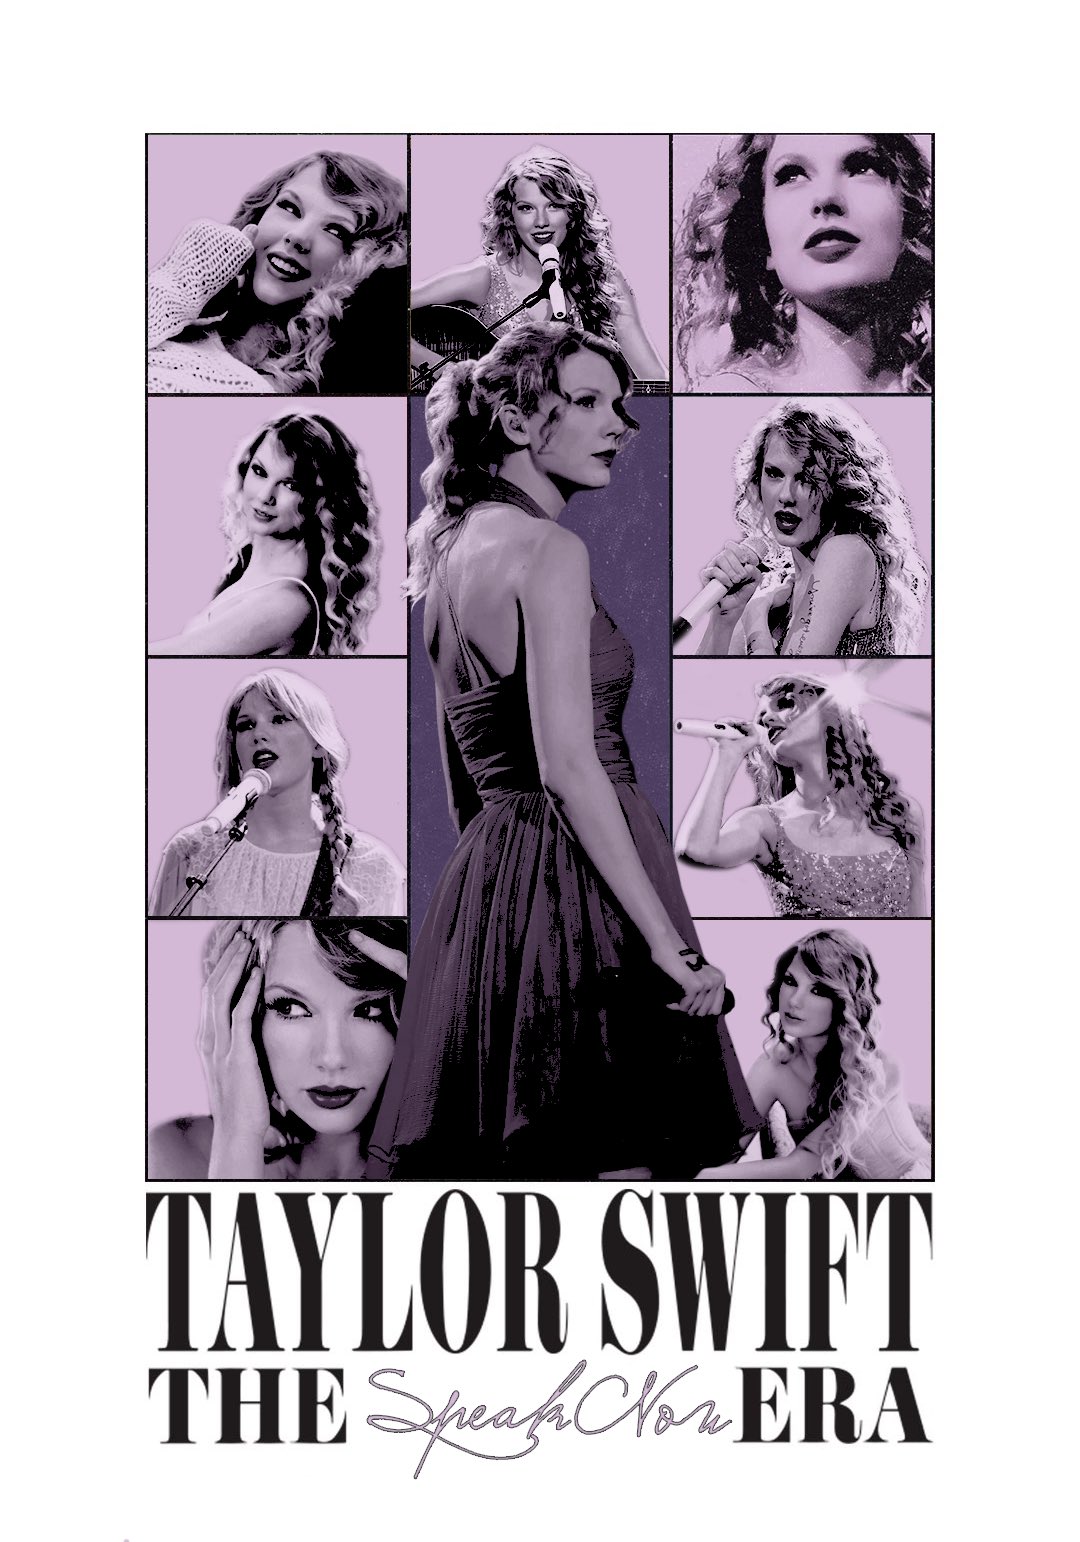 The Eras Tour on X: Taylor Swift: The Eras Tour Poster for Each Era. # TaylorSwift  / X